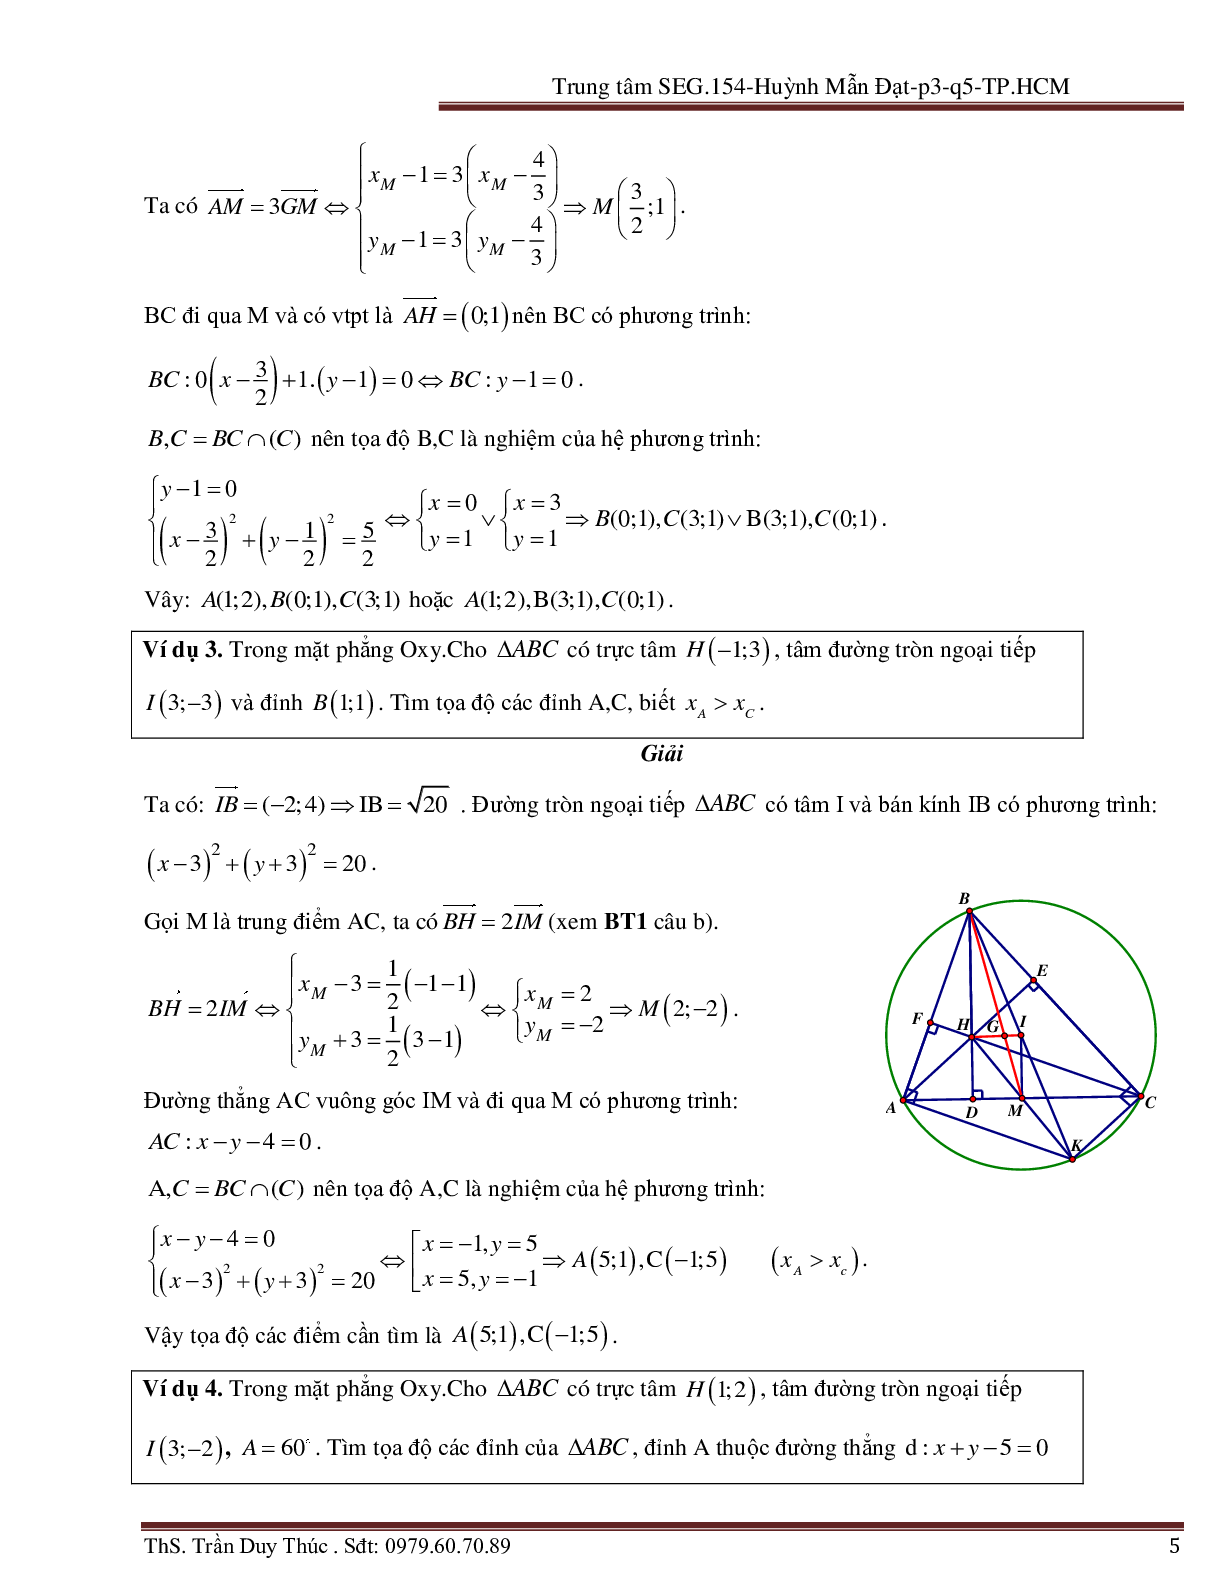 Vận dụng tính chất hình phẳng để giải bài toán Oxy liên quan đến đường tròn (trang 5)